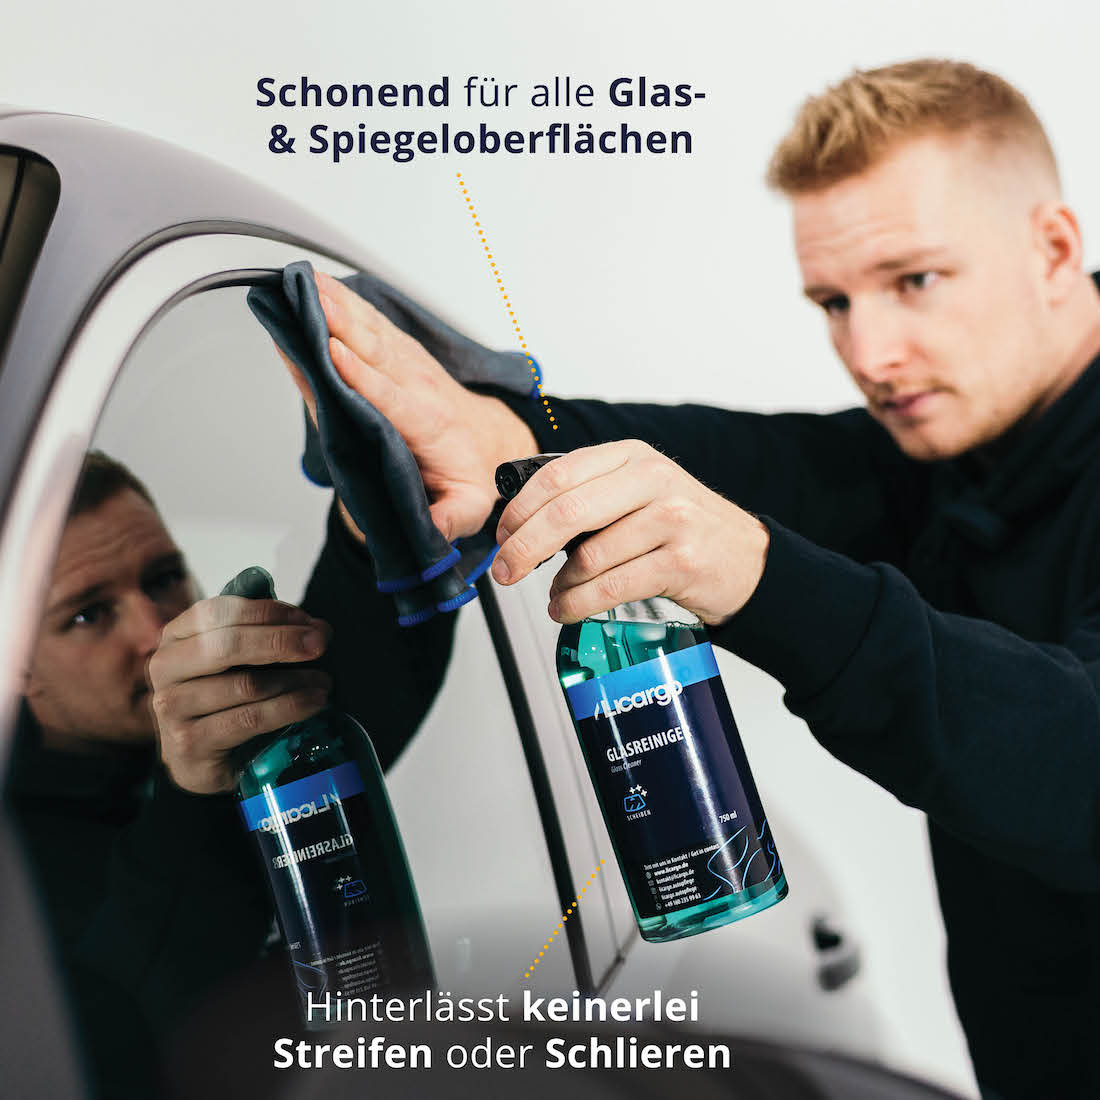 Für Innen & Außenscheiben=>Der Glasreiniger eignet sich gleichermaßen für die Reinigung der Außen- und Innenseiten Deiner Autoscheiben.